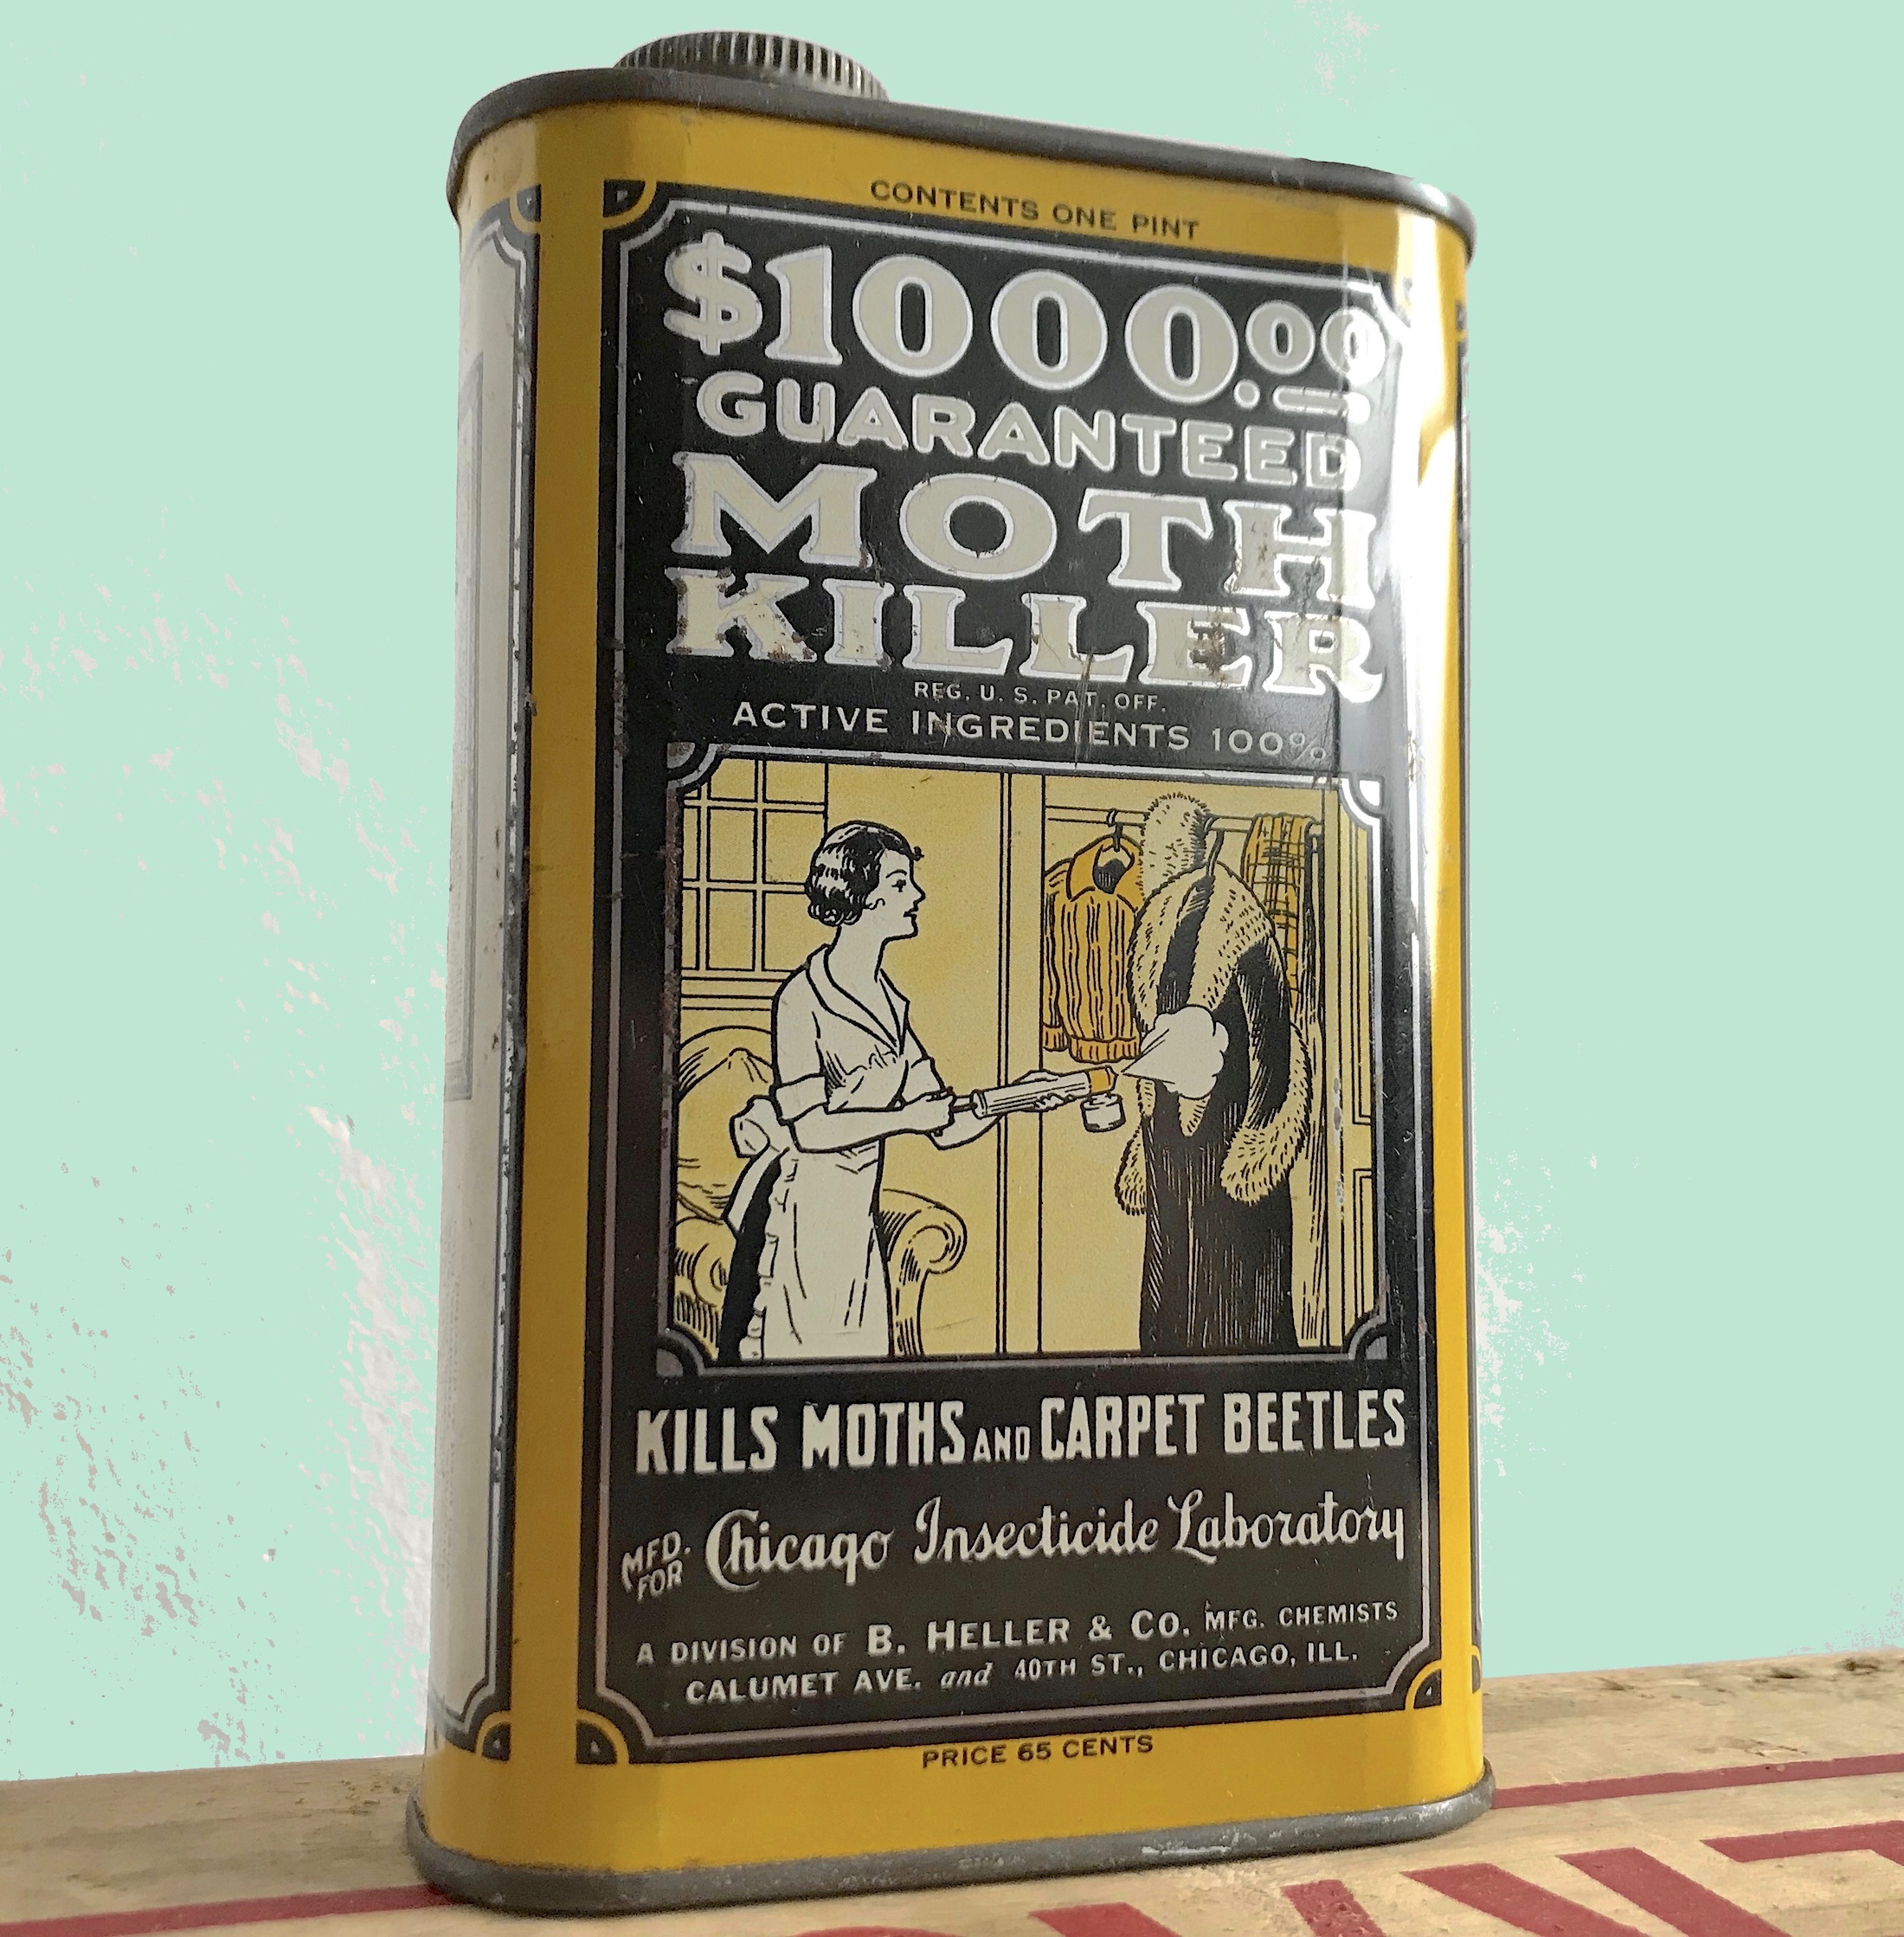 B. Heller Moth Killer